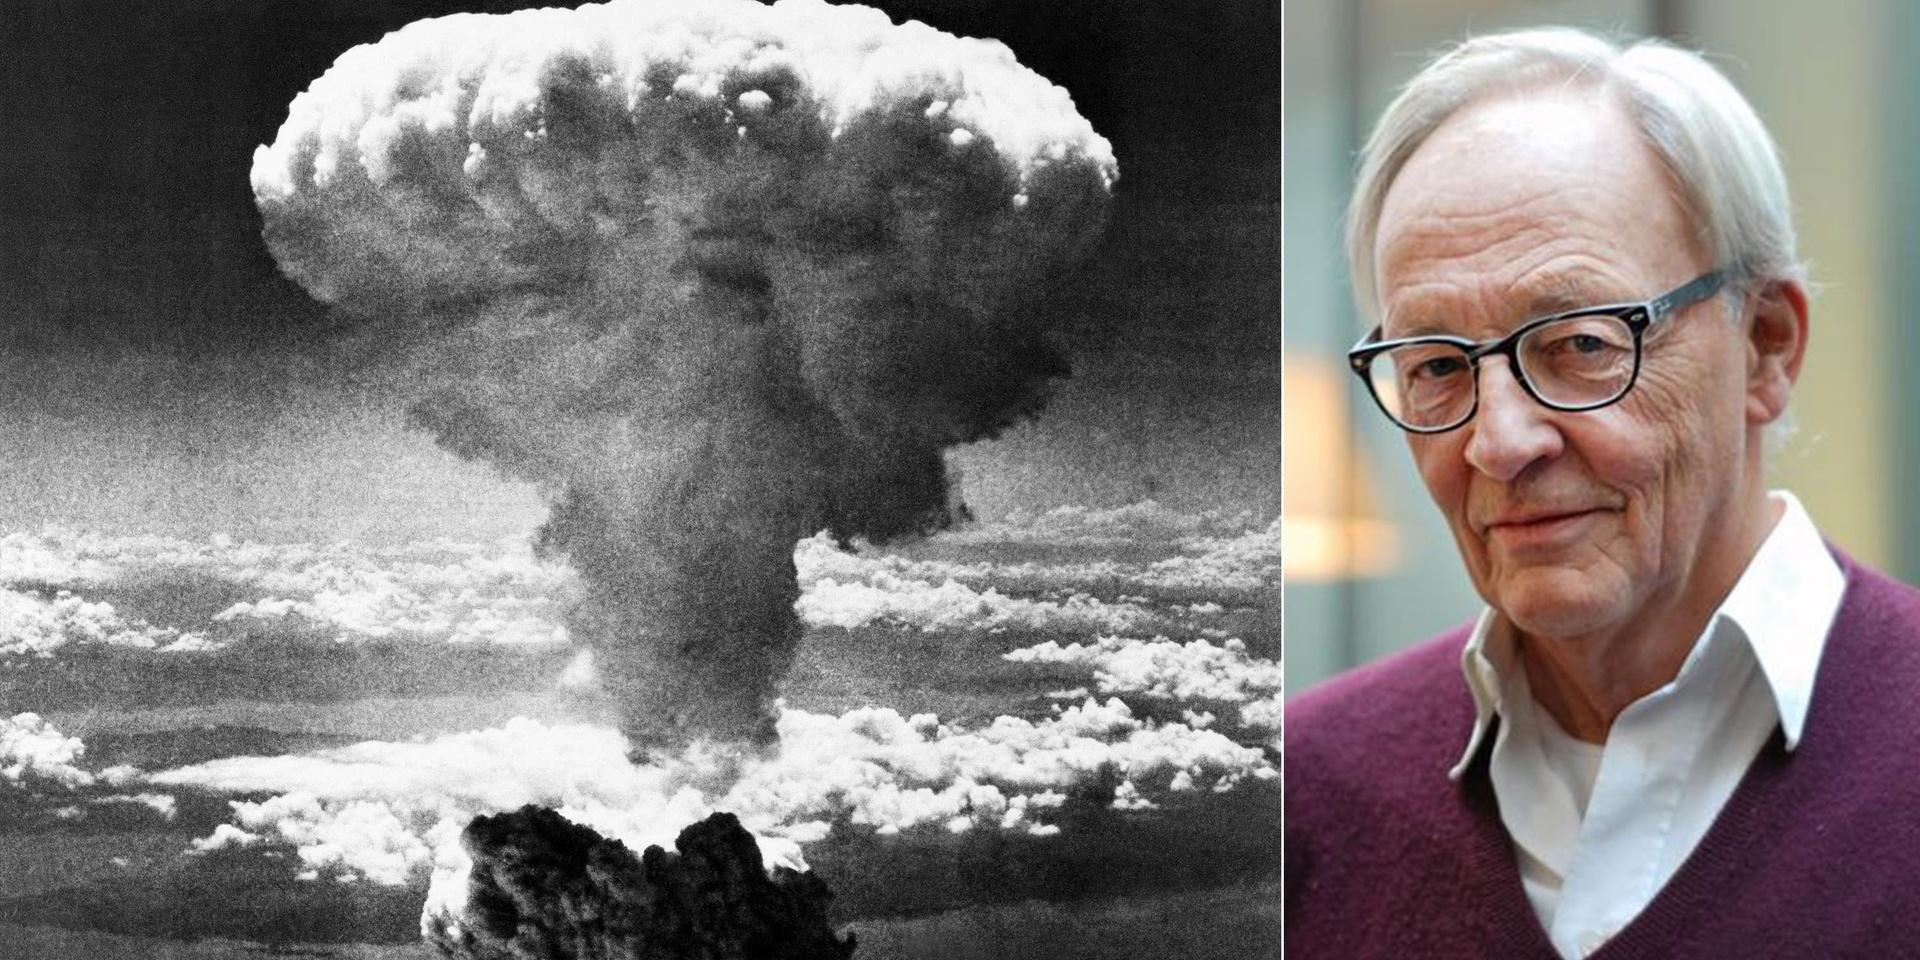 Den 6 augusti 1945 föll atombomben över Hiroshima och tre dagar senare över Nagasaki. 76 år senare är det hög tid för regeringen att skriva under avtalet som förbjuder kärnvapen, skriver debattören.